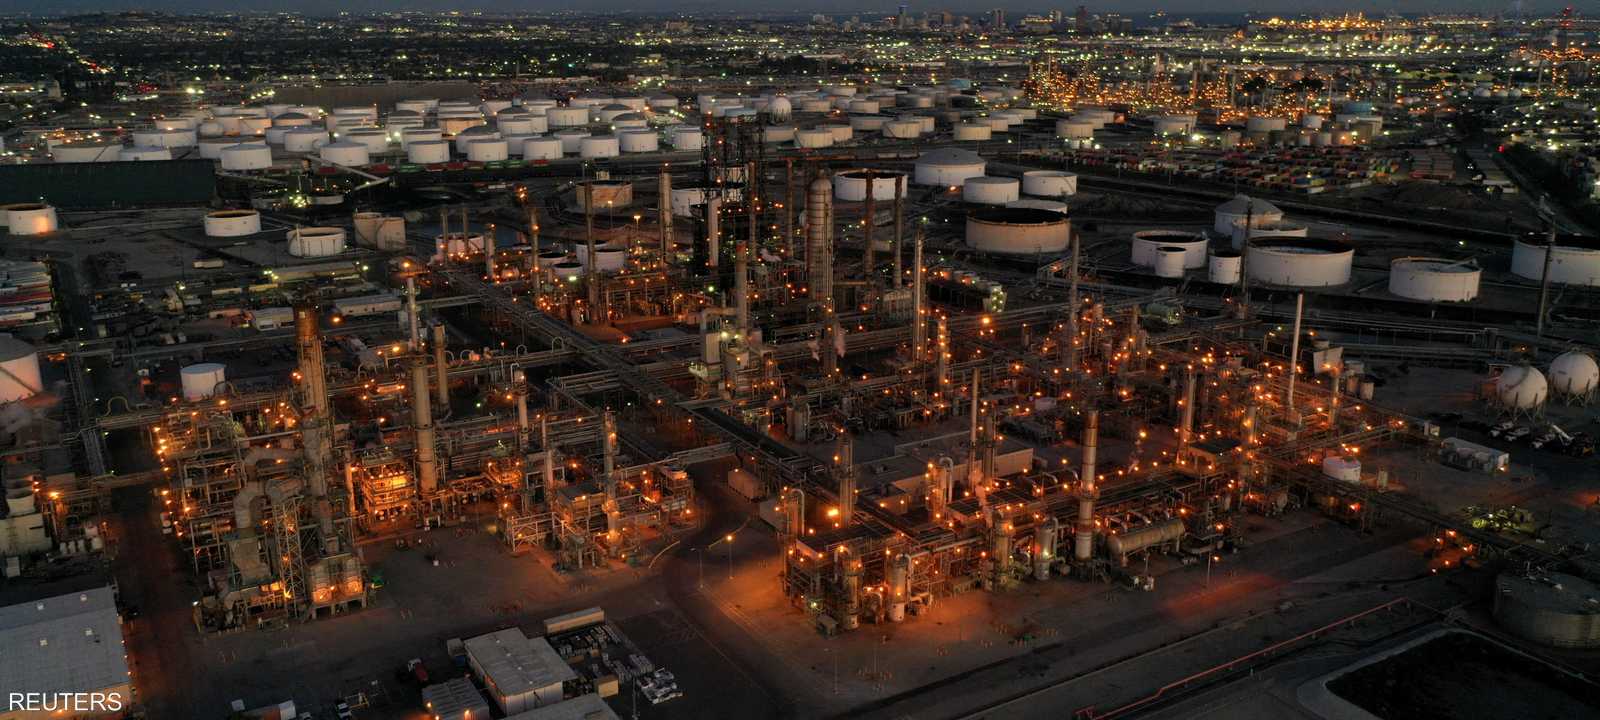 النفط - مصفاة لوس أنجلوس التابعة لشركة فيليبس